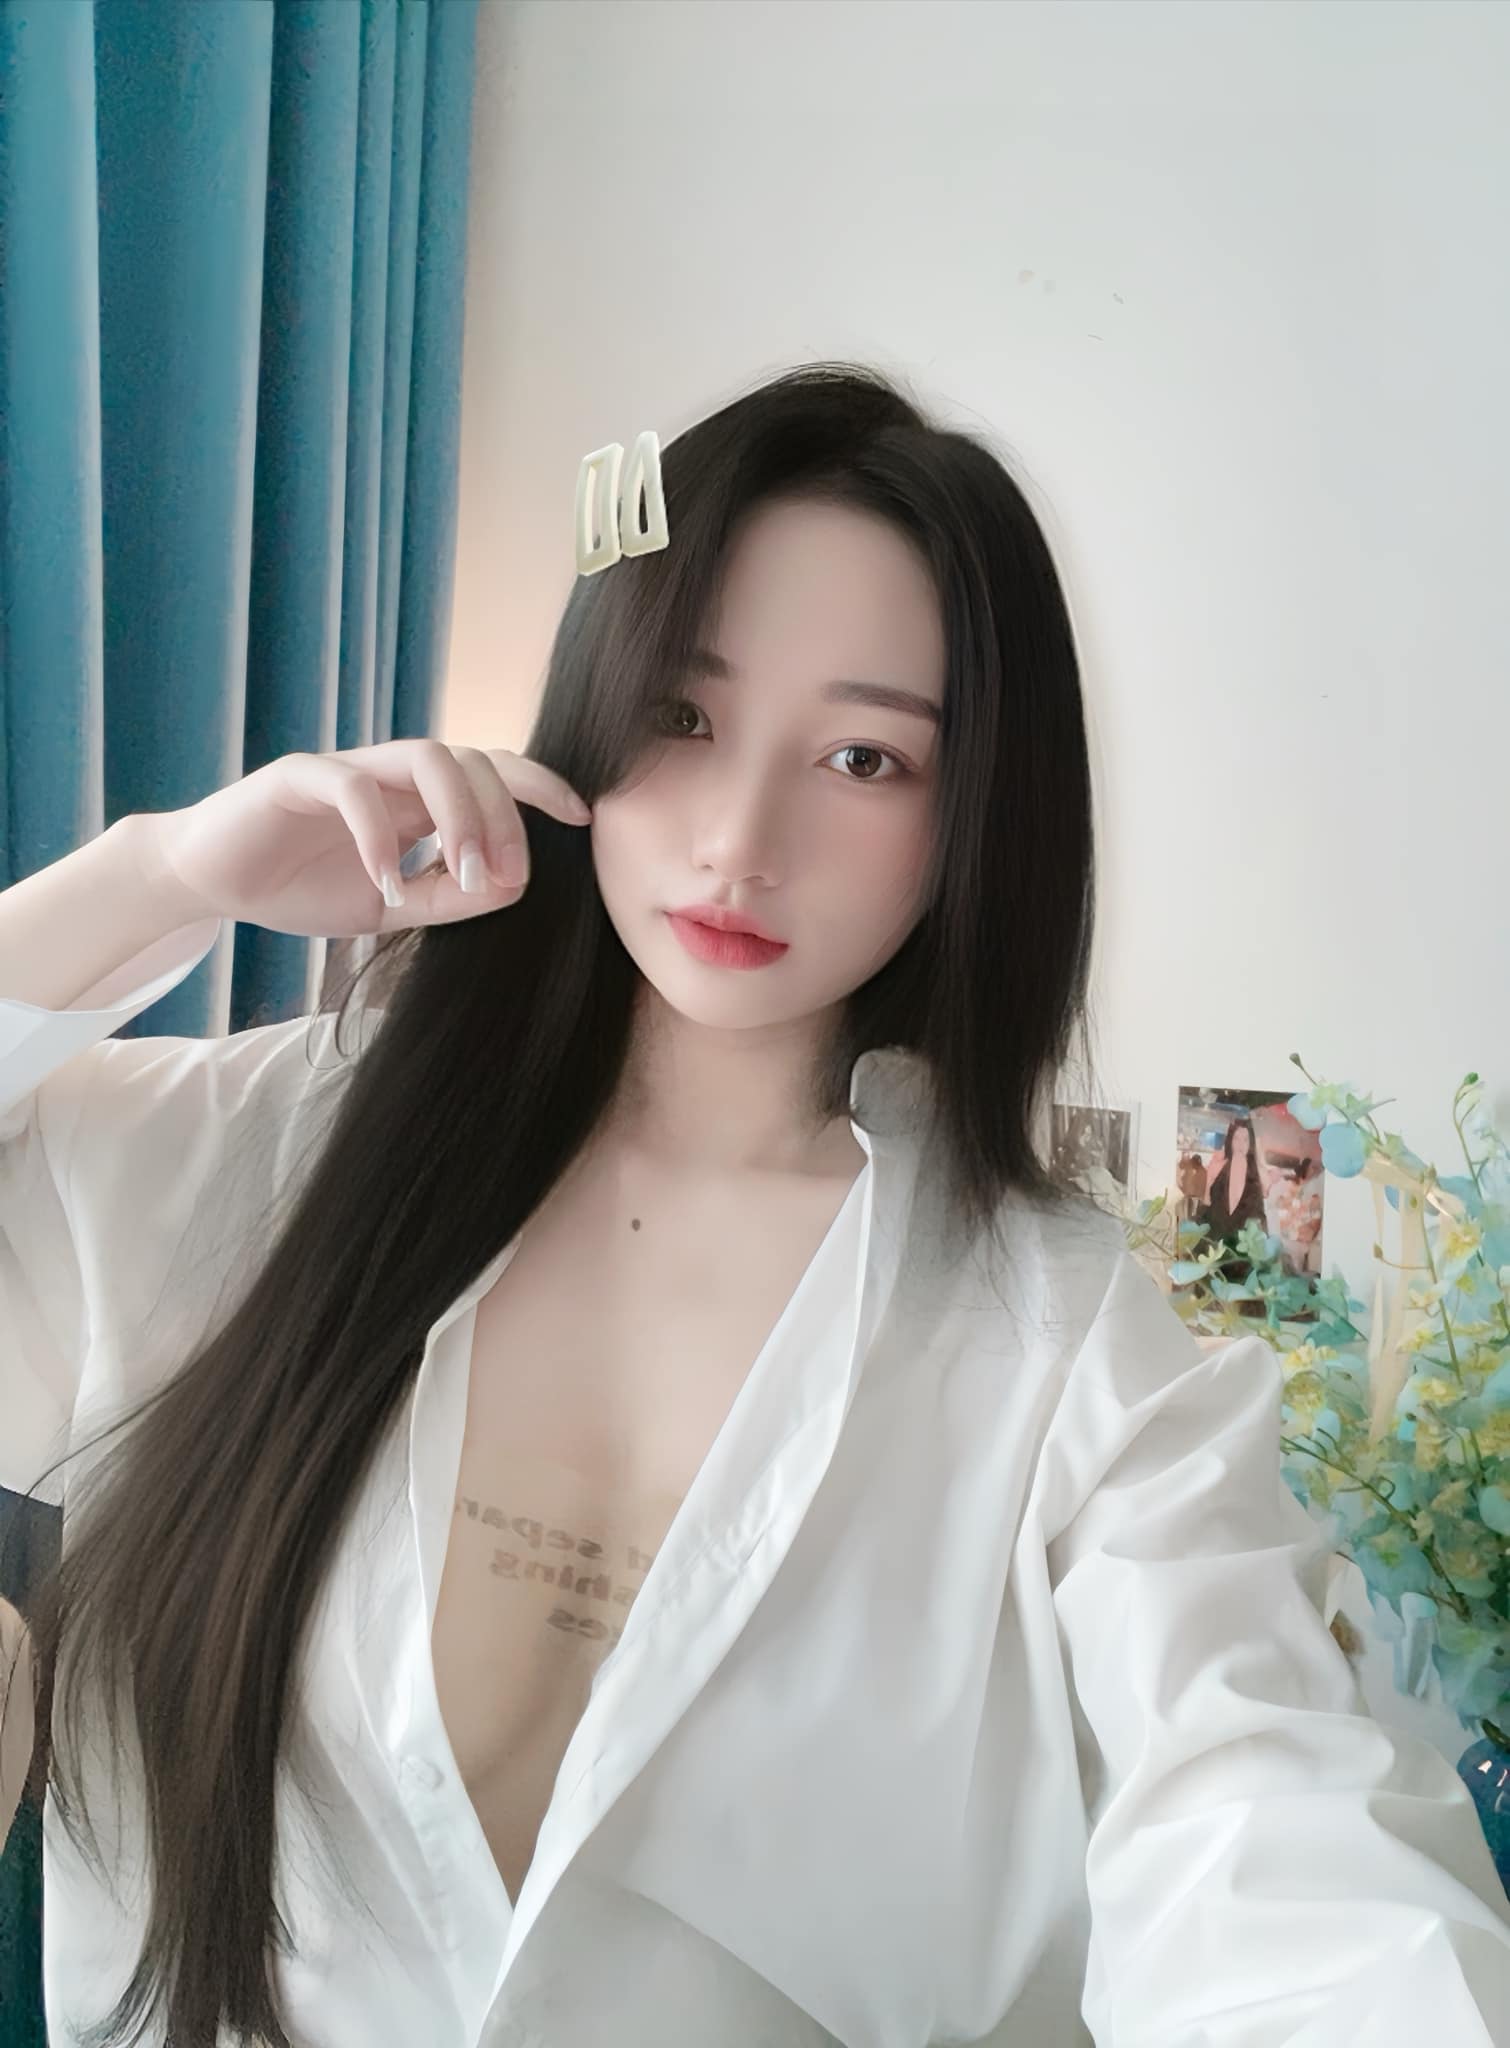 Hot girl Quảng Ninh chỉ cách tôn vòng 1 đẹp không phô với sơ mi - 3